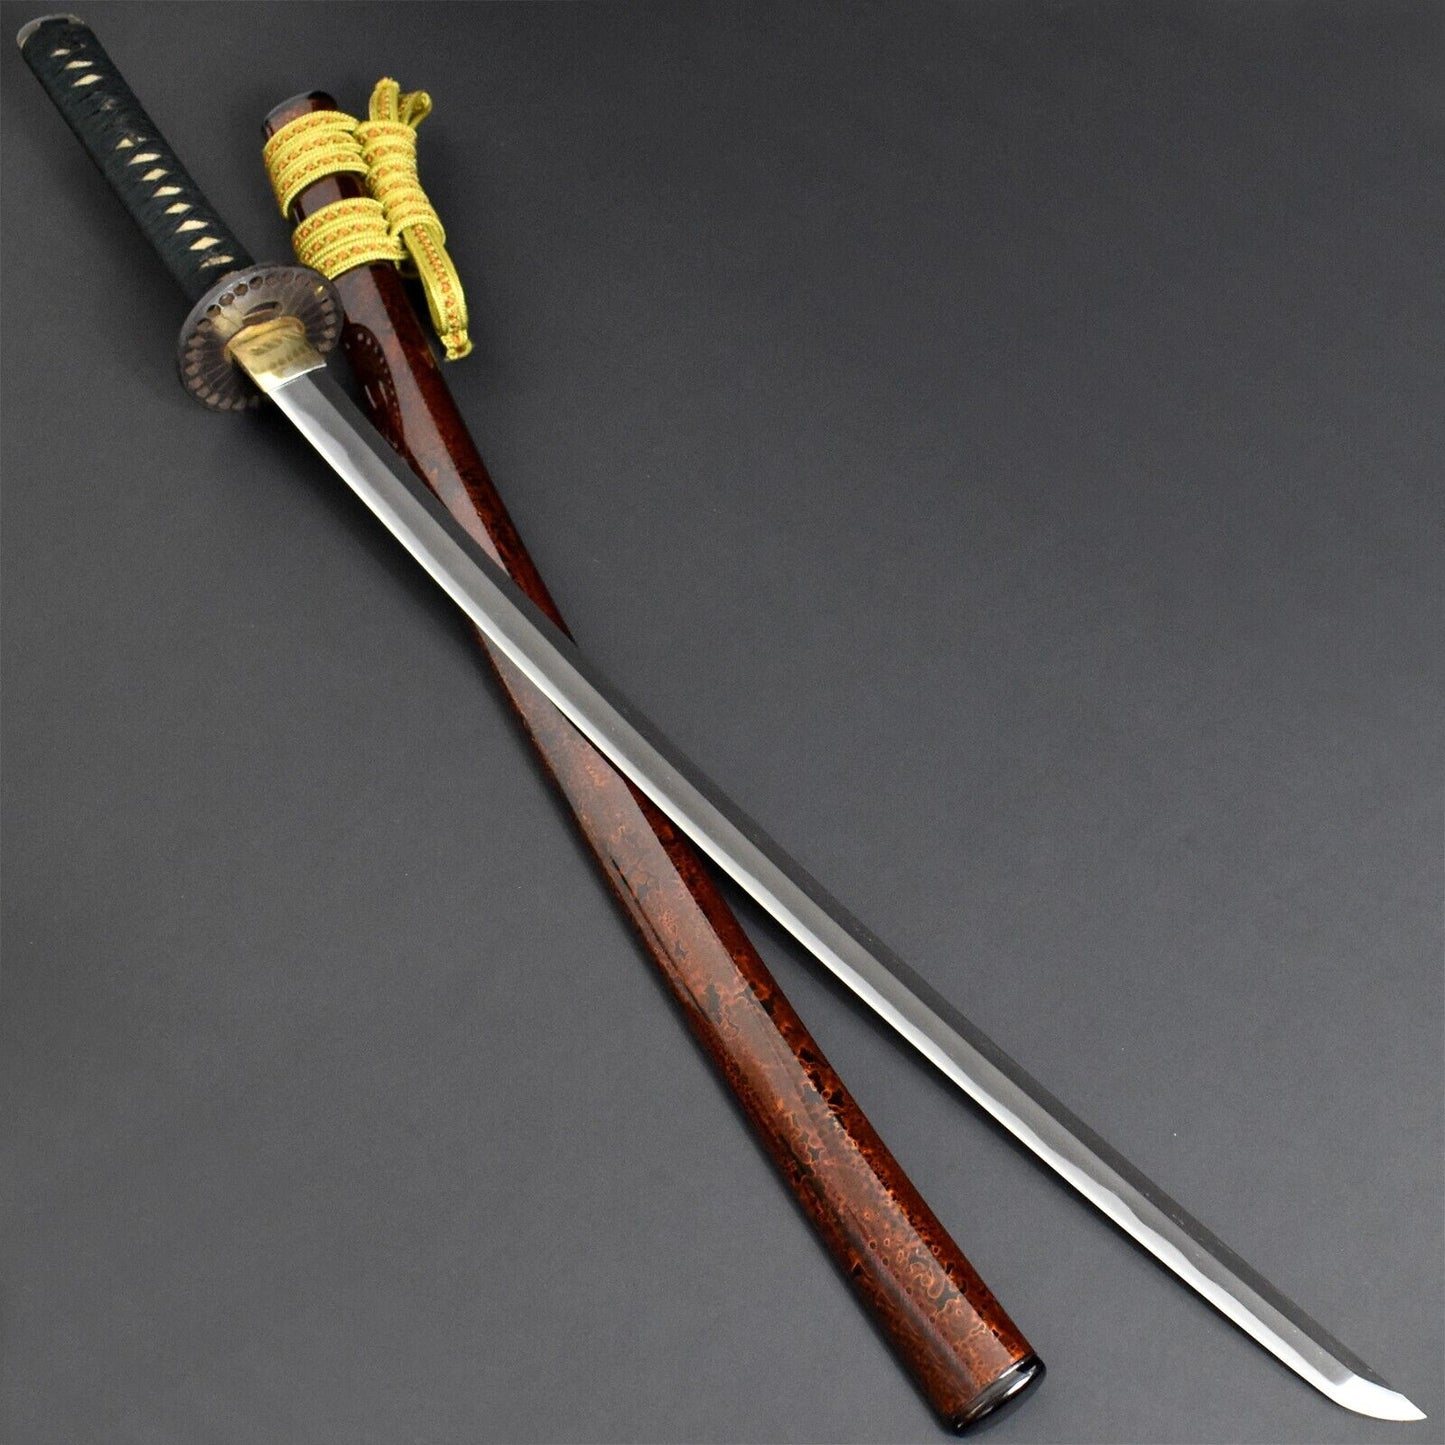 Original Old Collectible Japanese Nihonto Sword Samurai Weapon Katana from Sengoku Period.